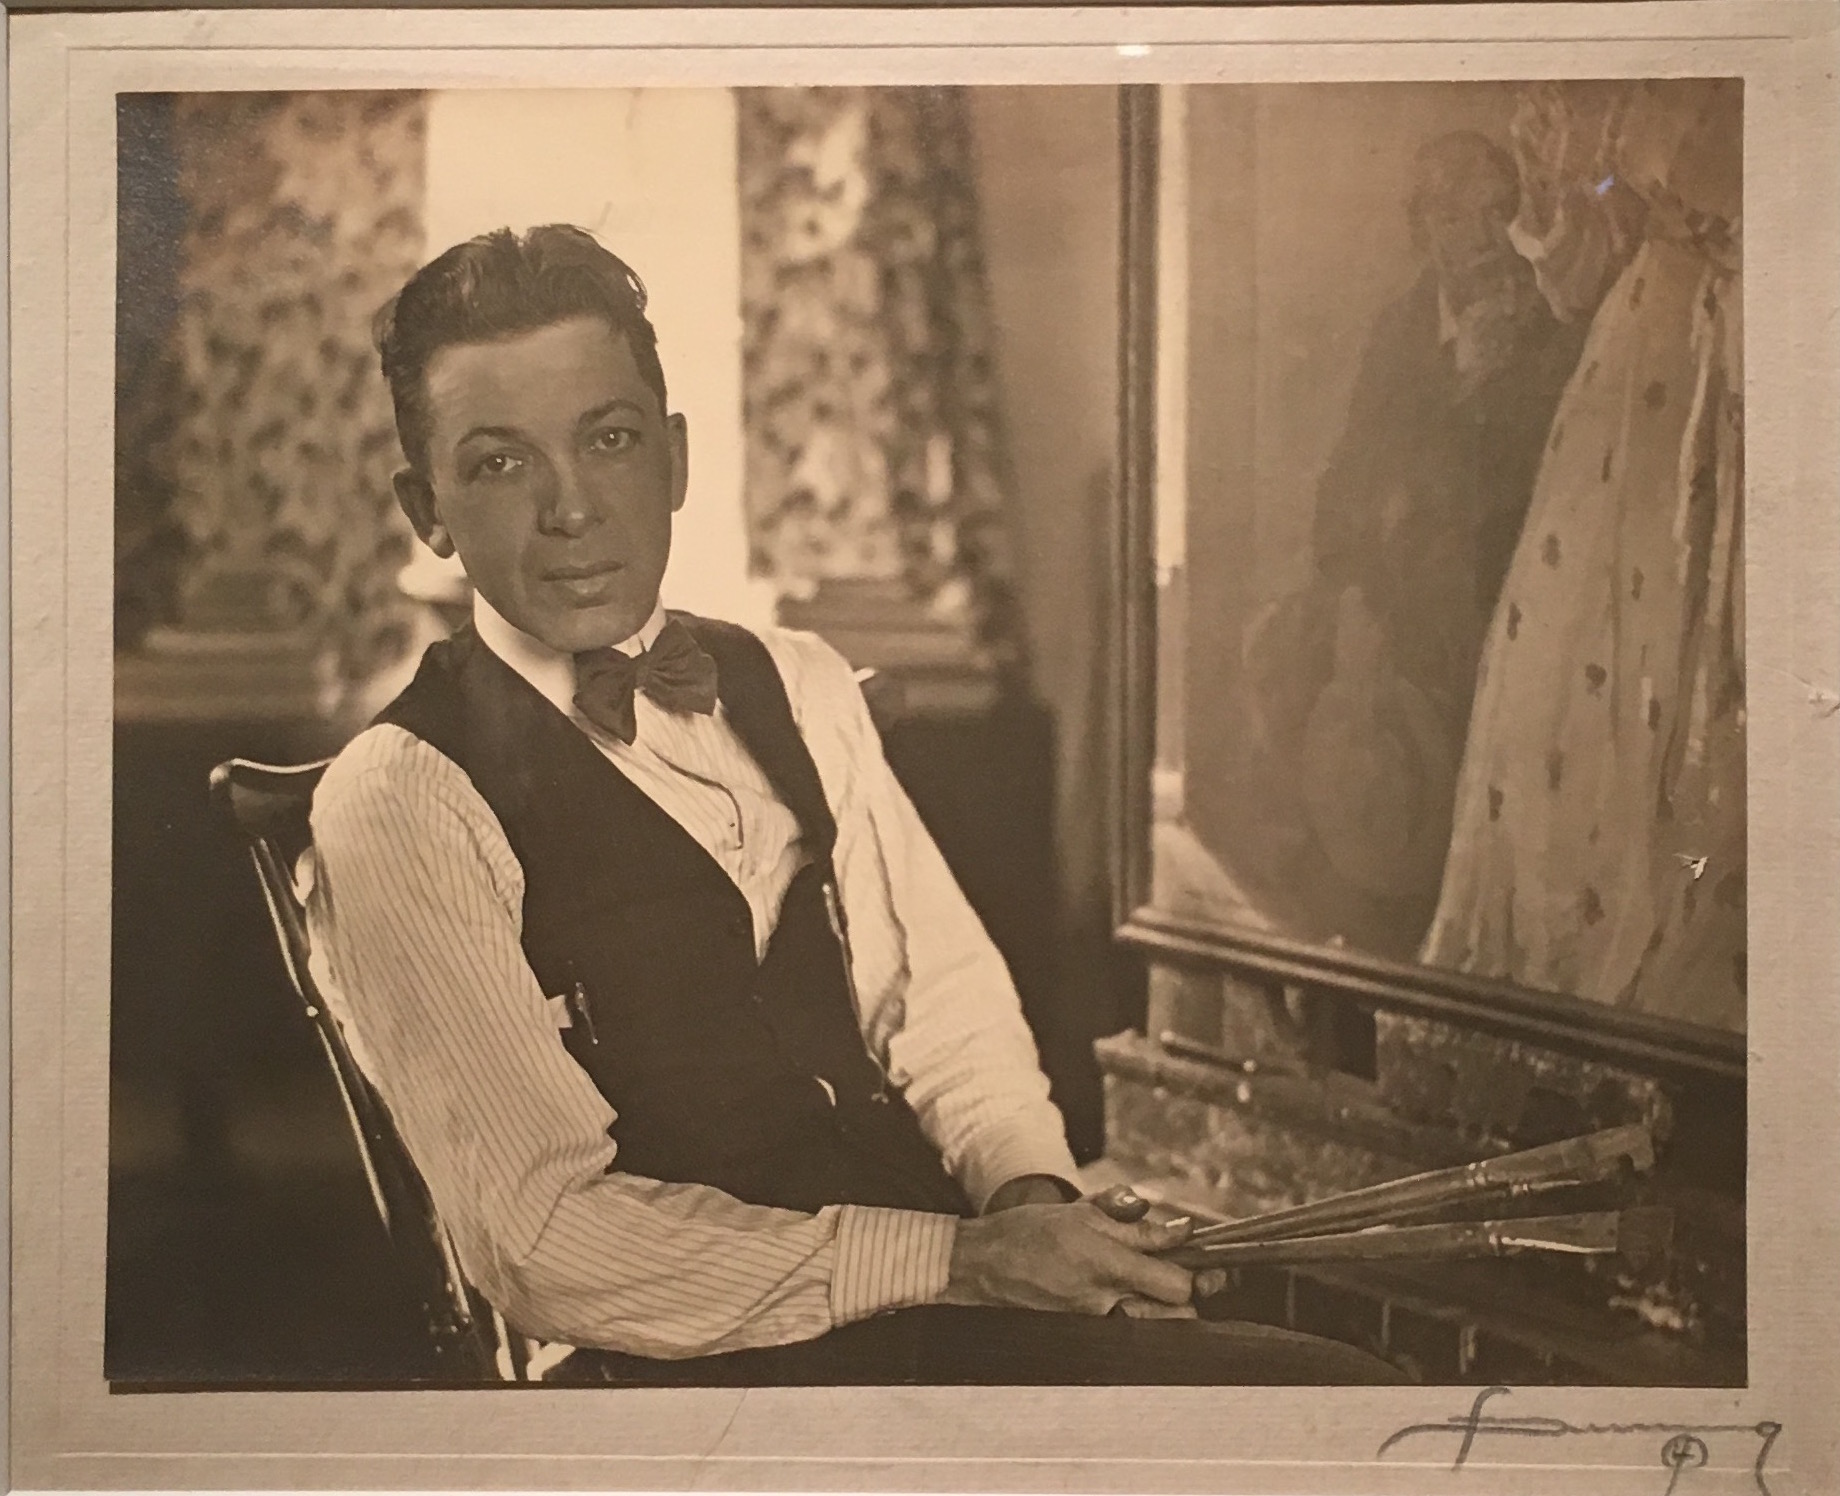 The life of World War I artist Harry Everett Townsend